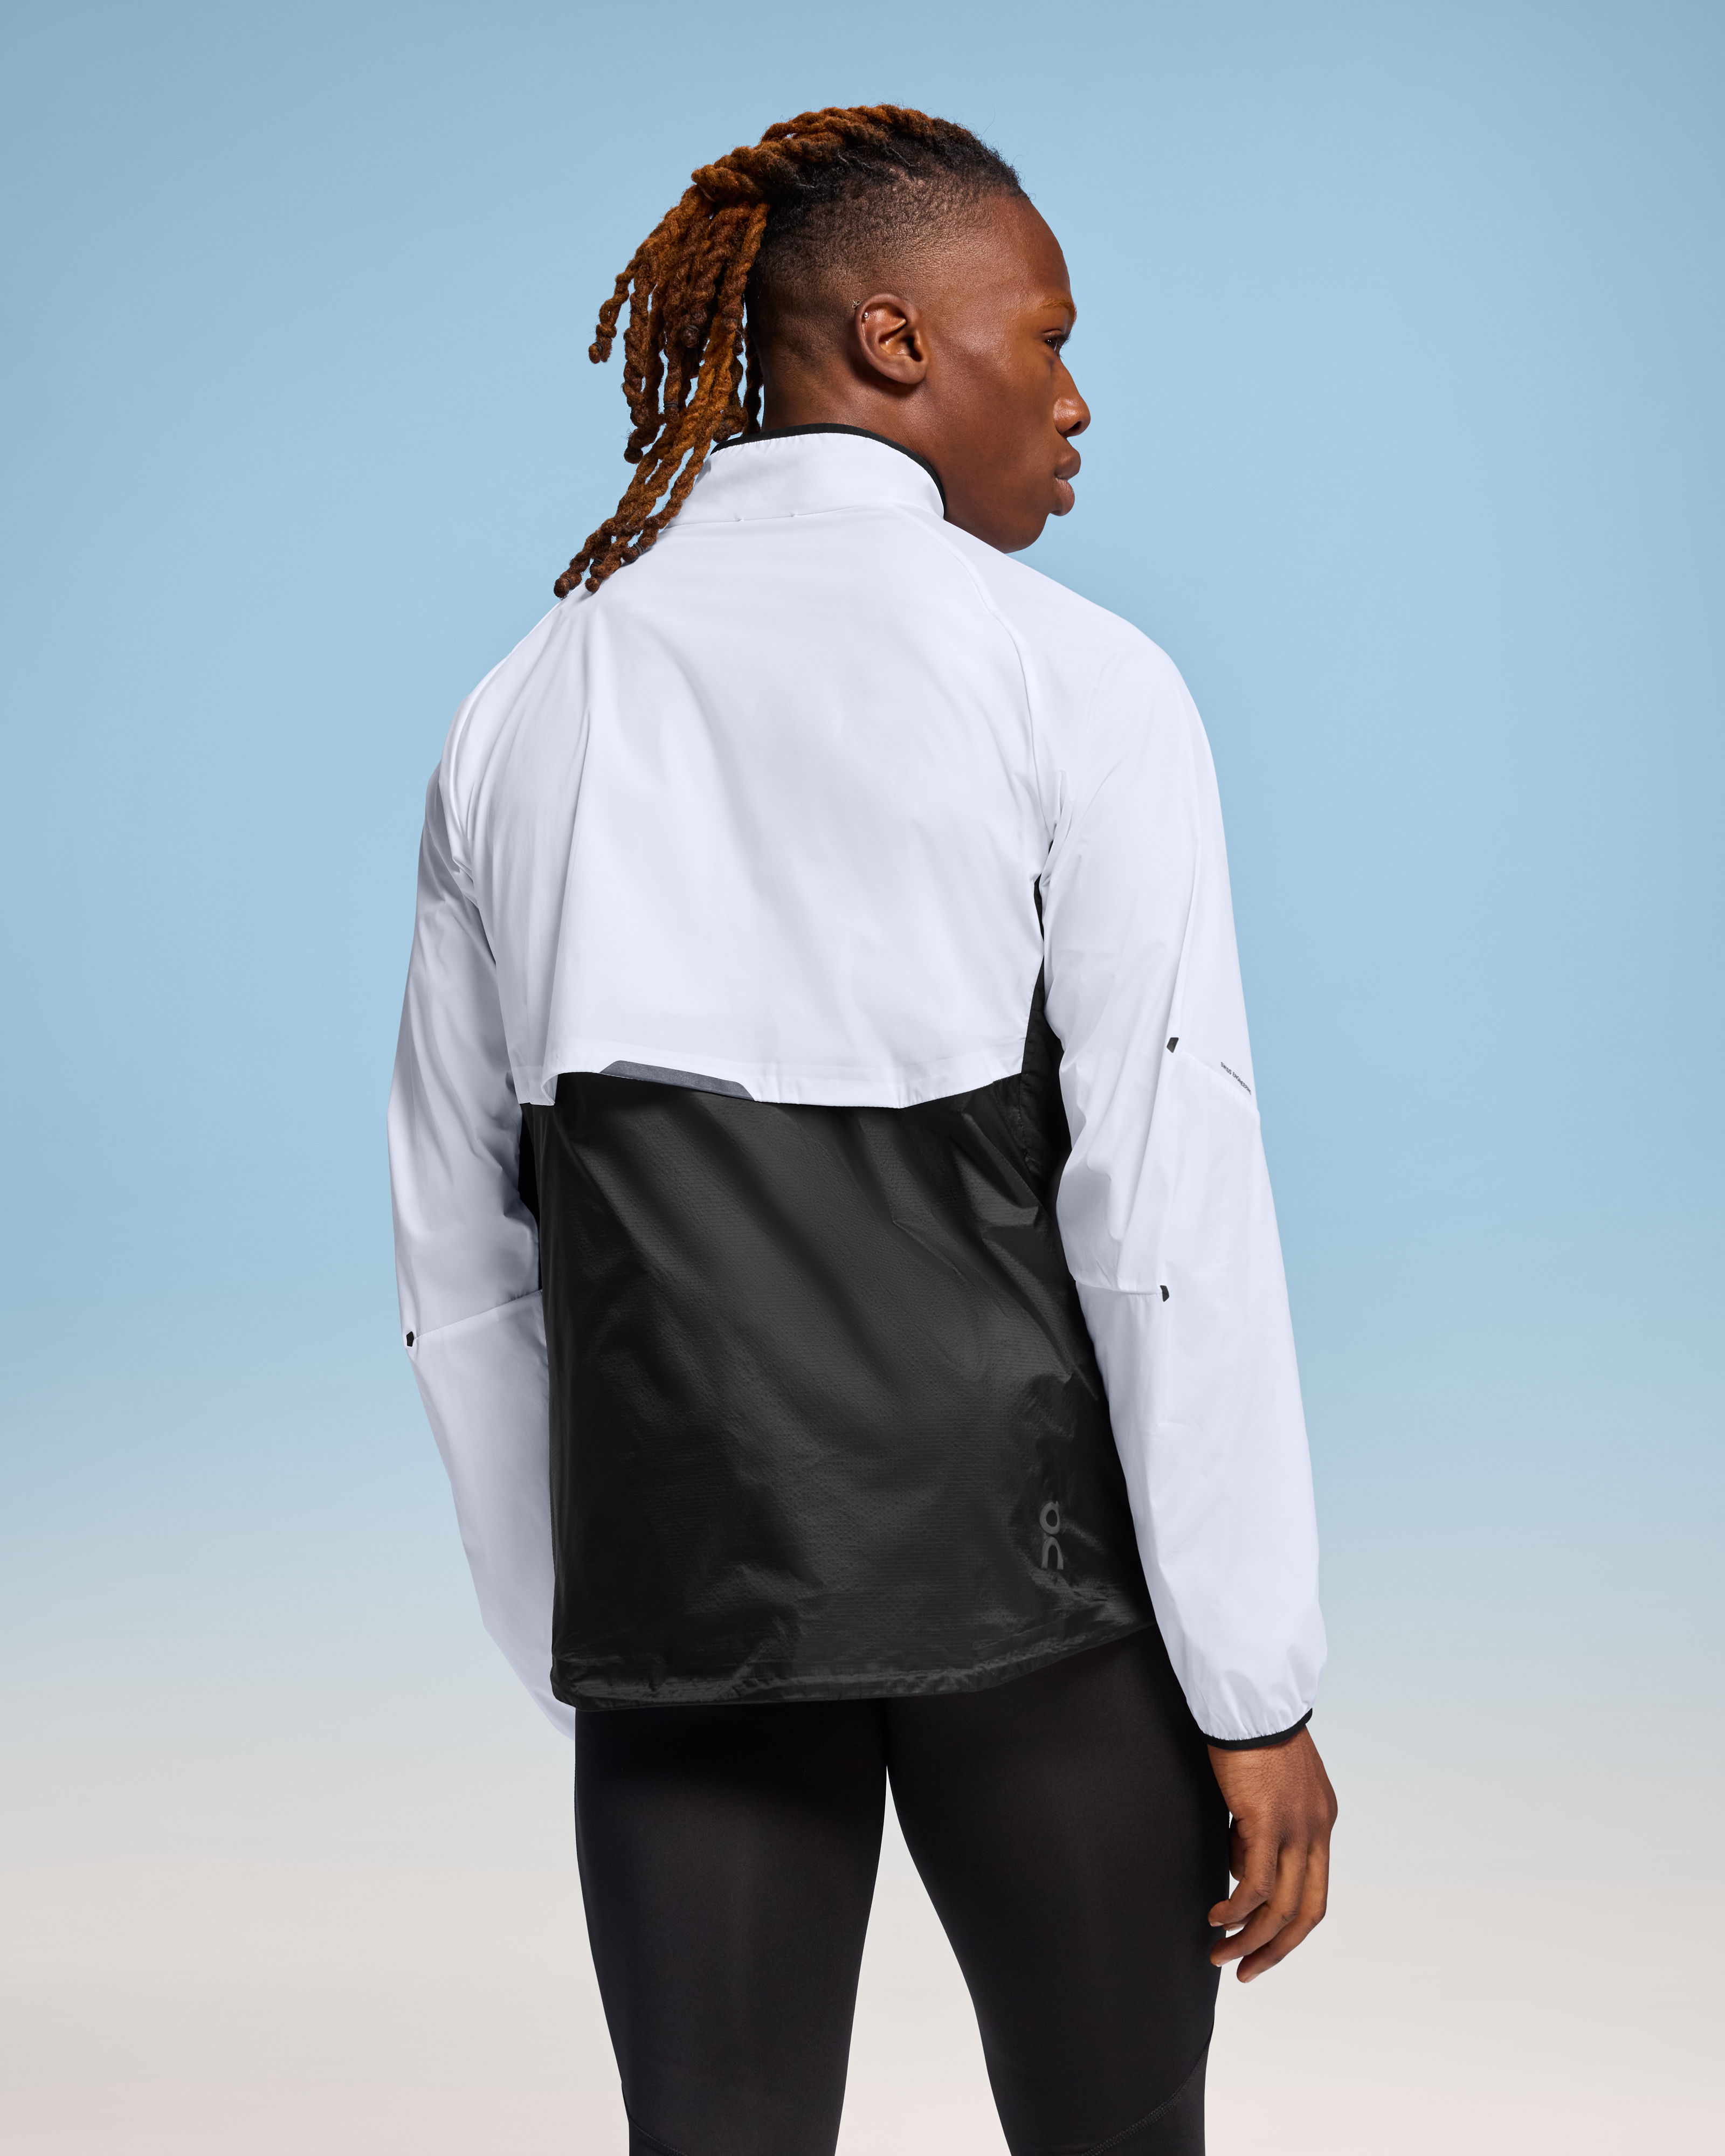 Men's Weather Jacket | White & Black | On United States